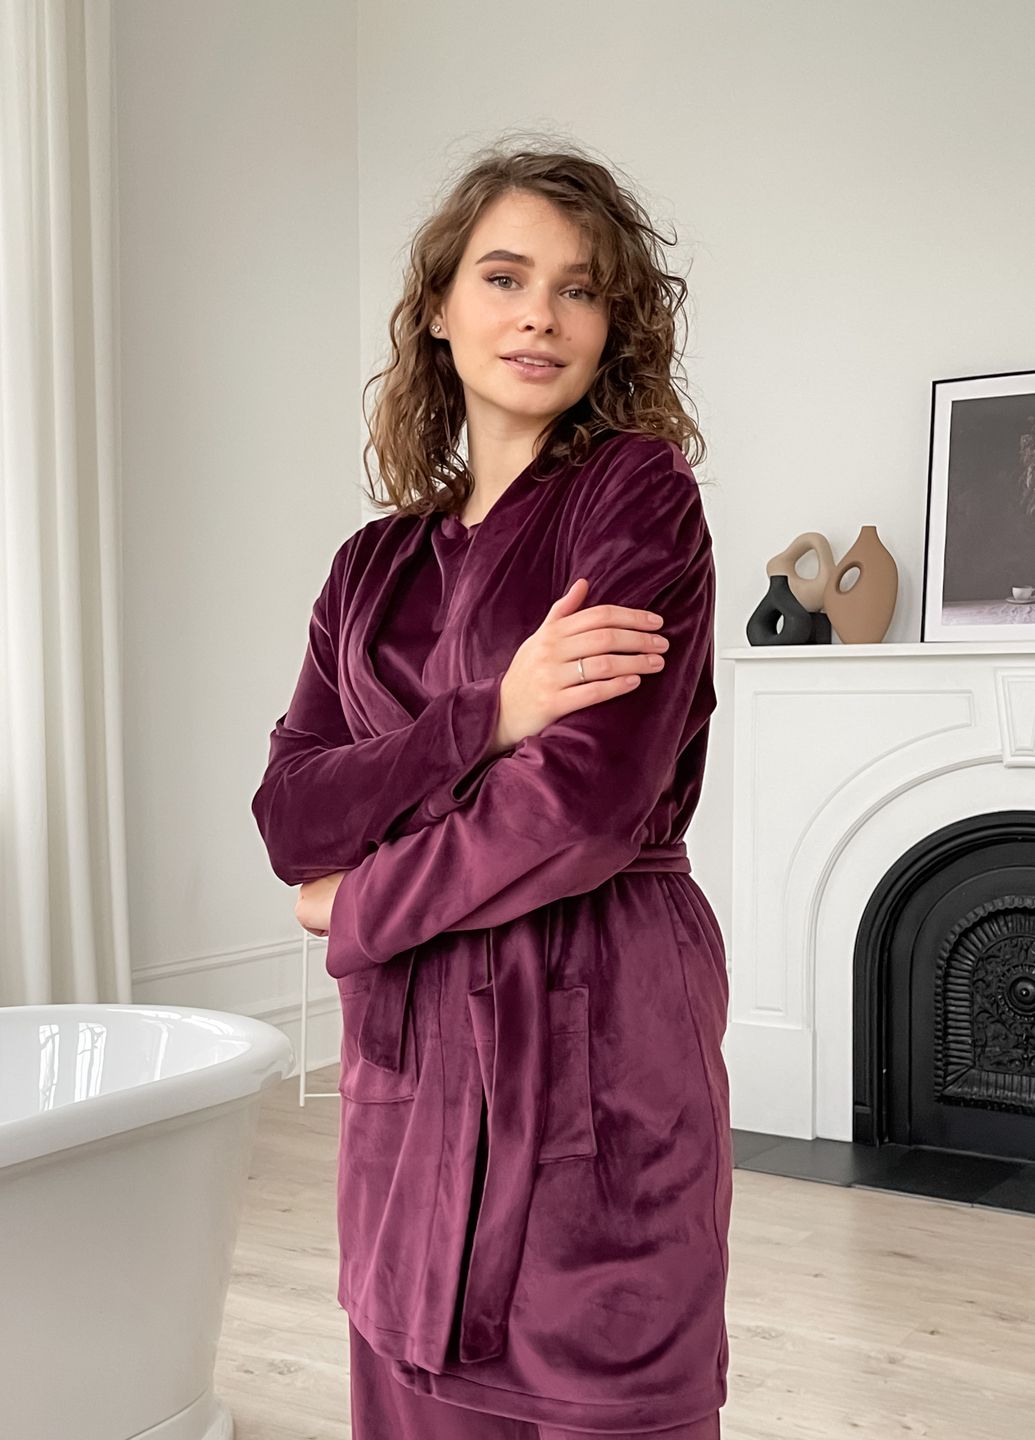 Теплая велюровая женская пижама 3: халат, брюки, футболка бордового цвета Merlini Буя 100000212, размер 42-44